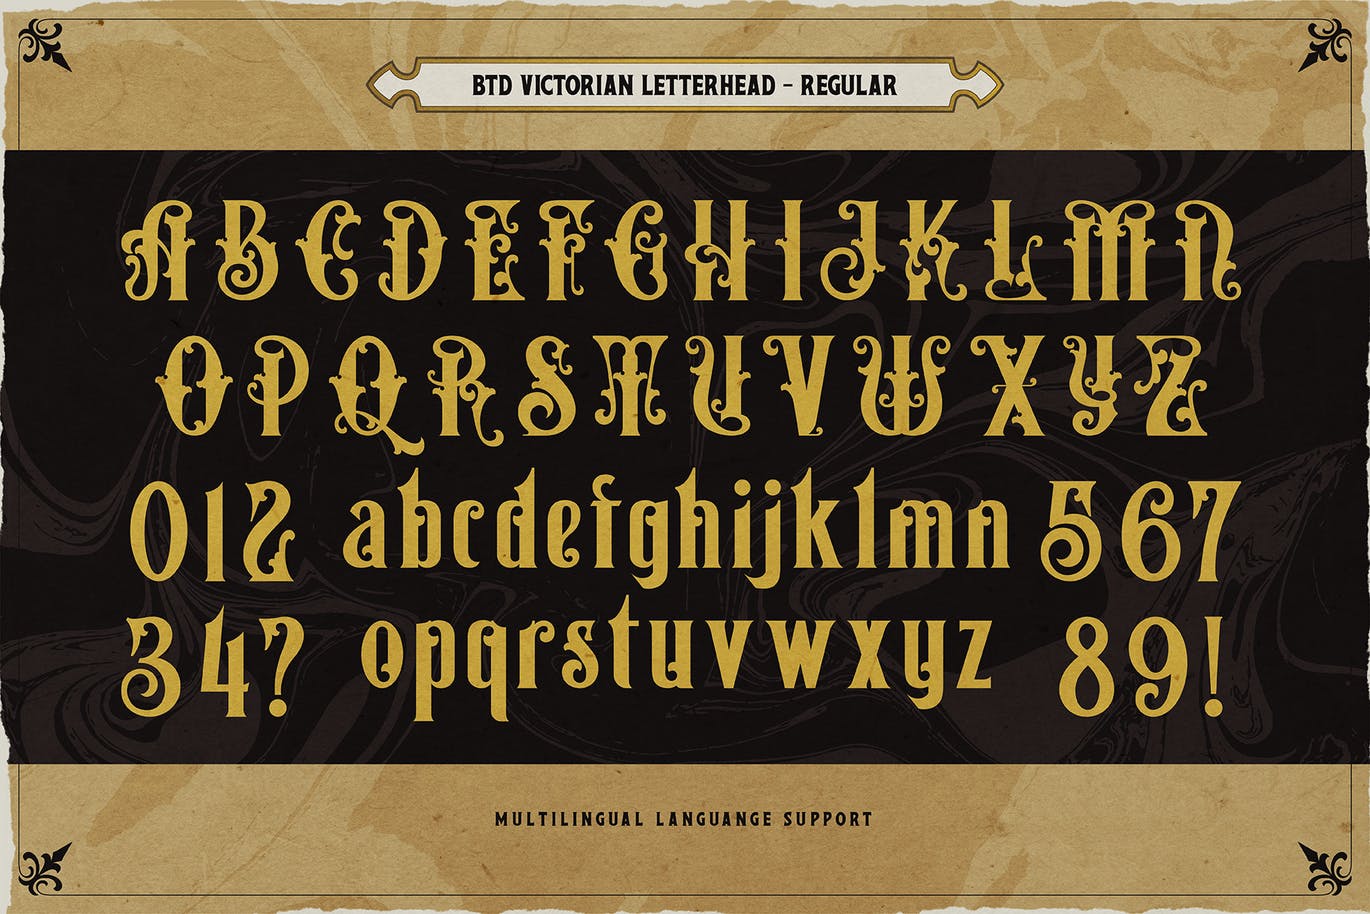 复古维多利亚版式设计衬线字体素材 Victorian Letterhead 设计素材 第2张